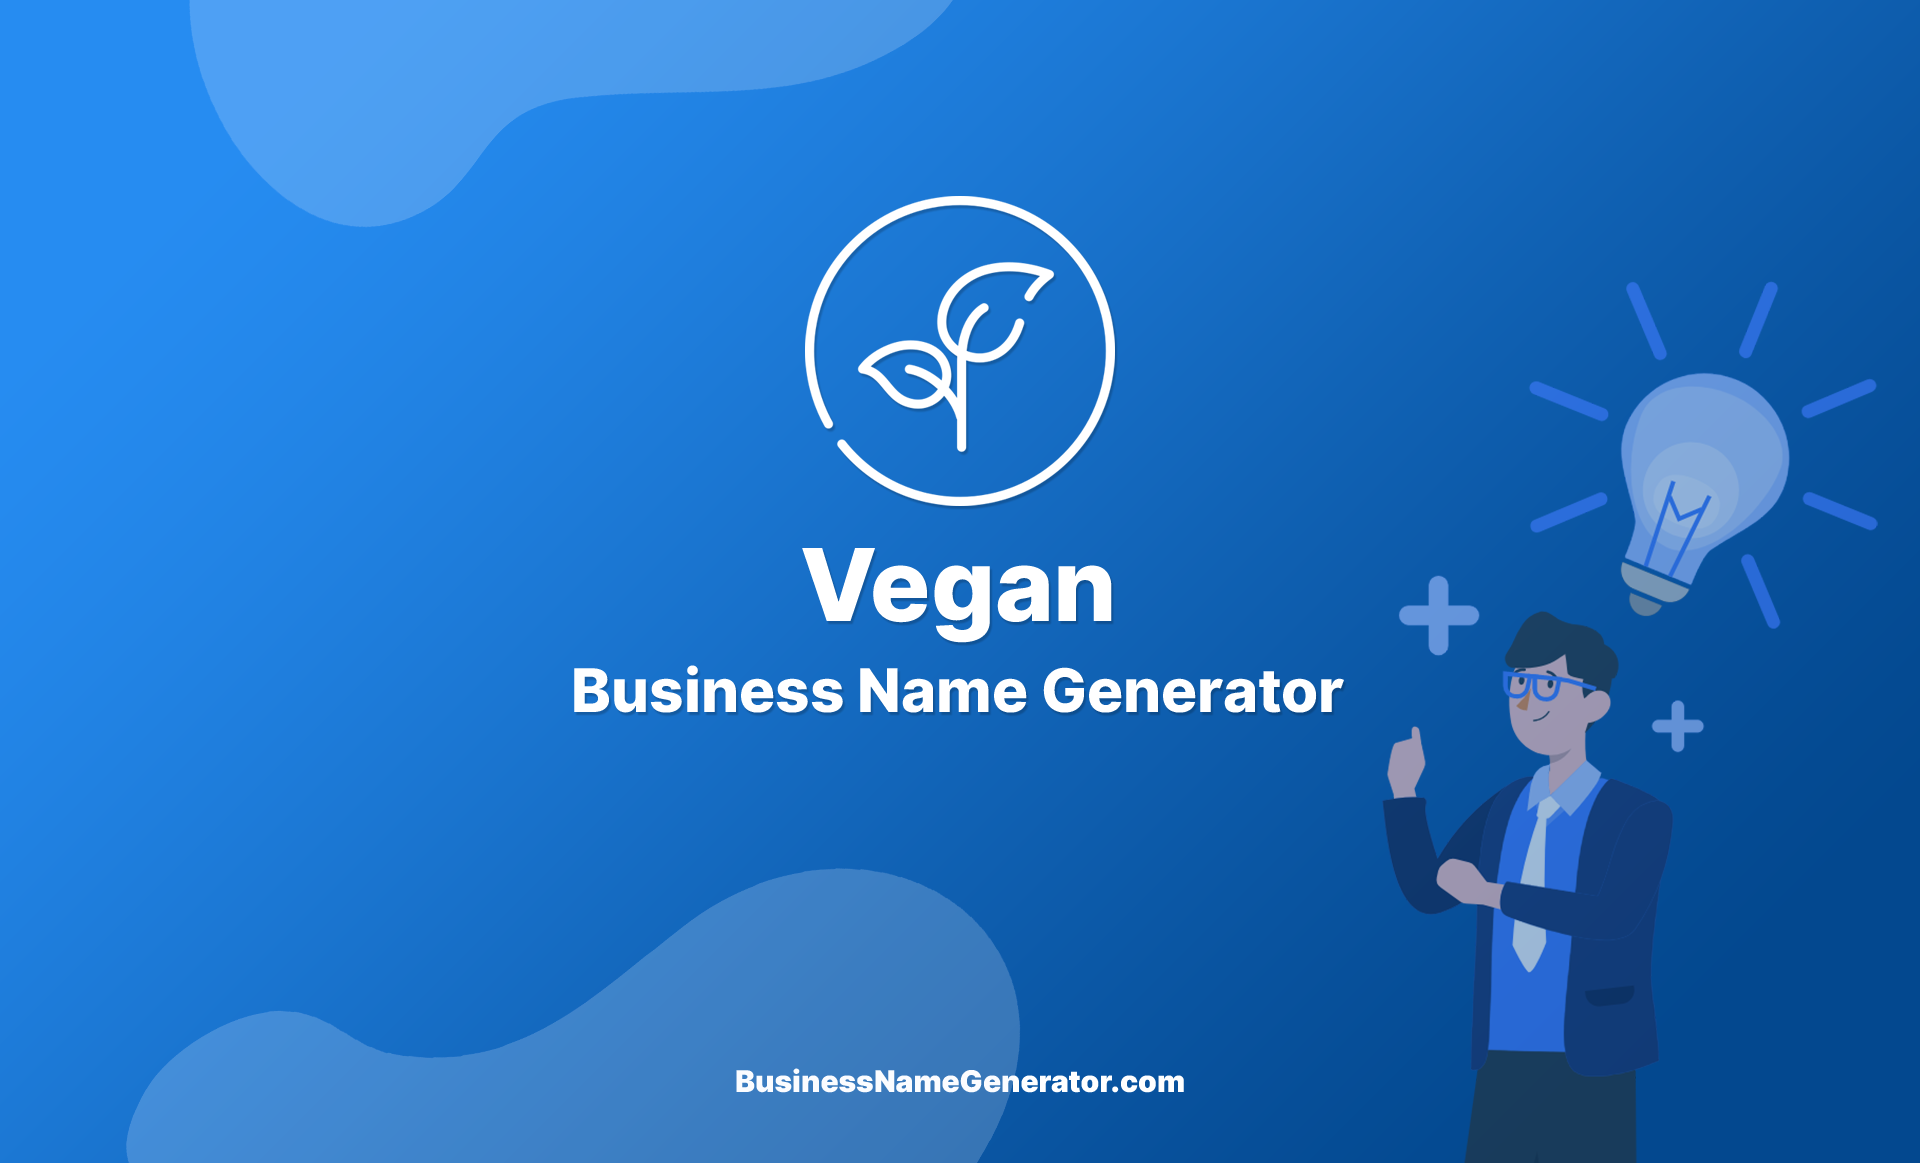 Vegan Business Name Generator Guide & Ideas